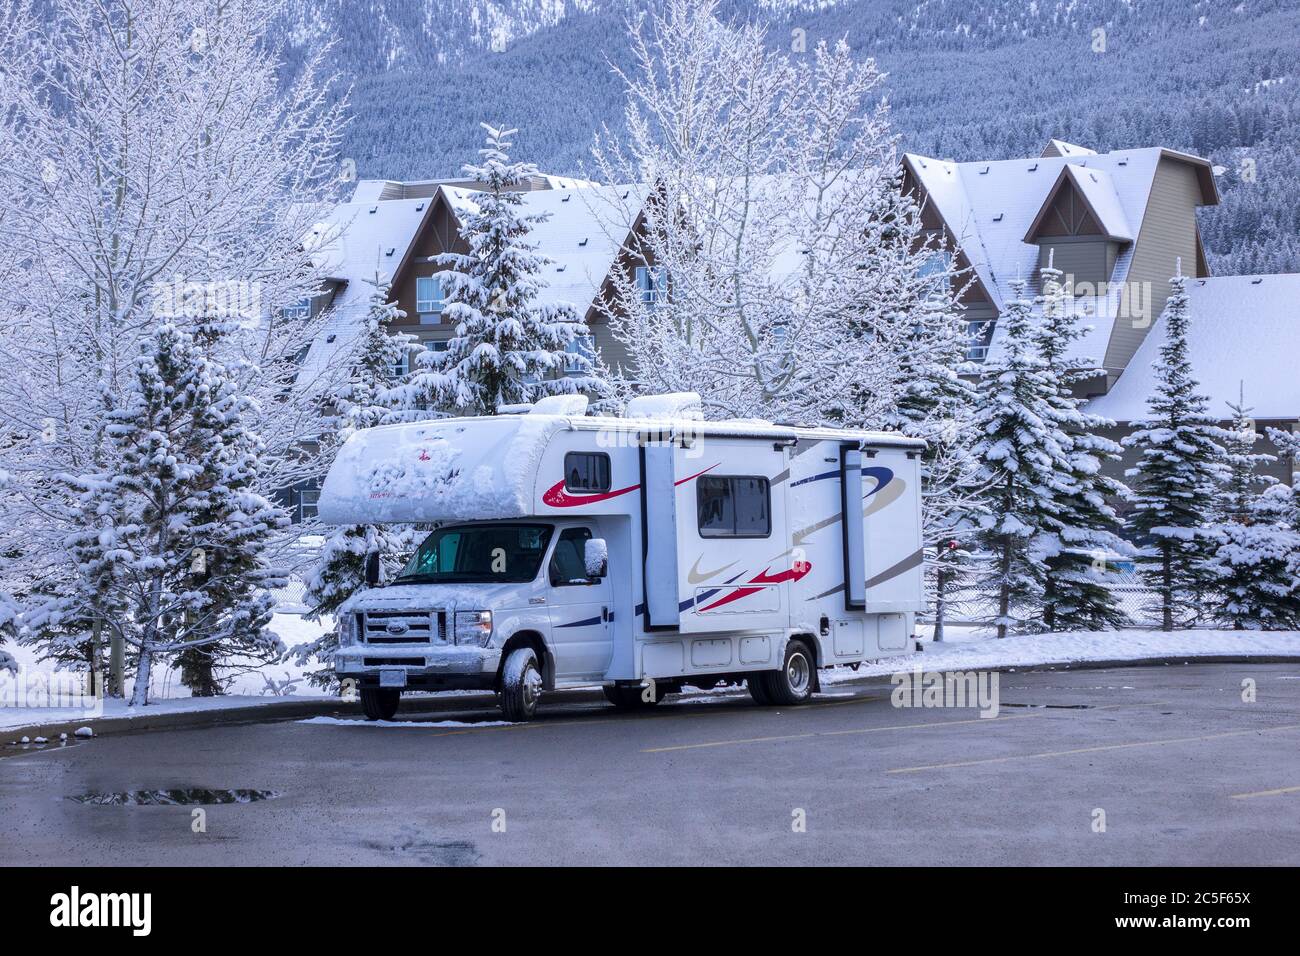 Un Camping camping-car de classe C pour véhicules récréatifs stationné la nuit dans le Canmore de neige, Alberta Canada Banque D'Images